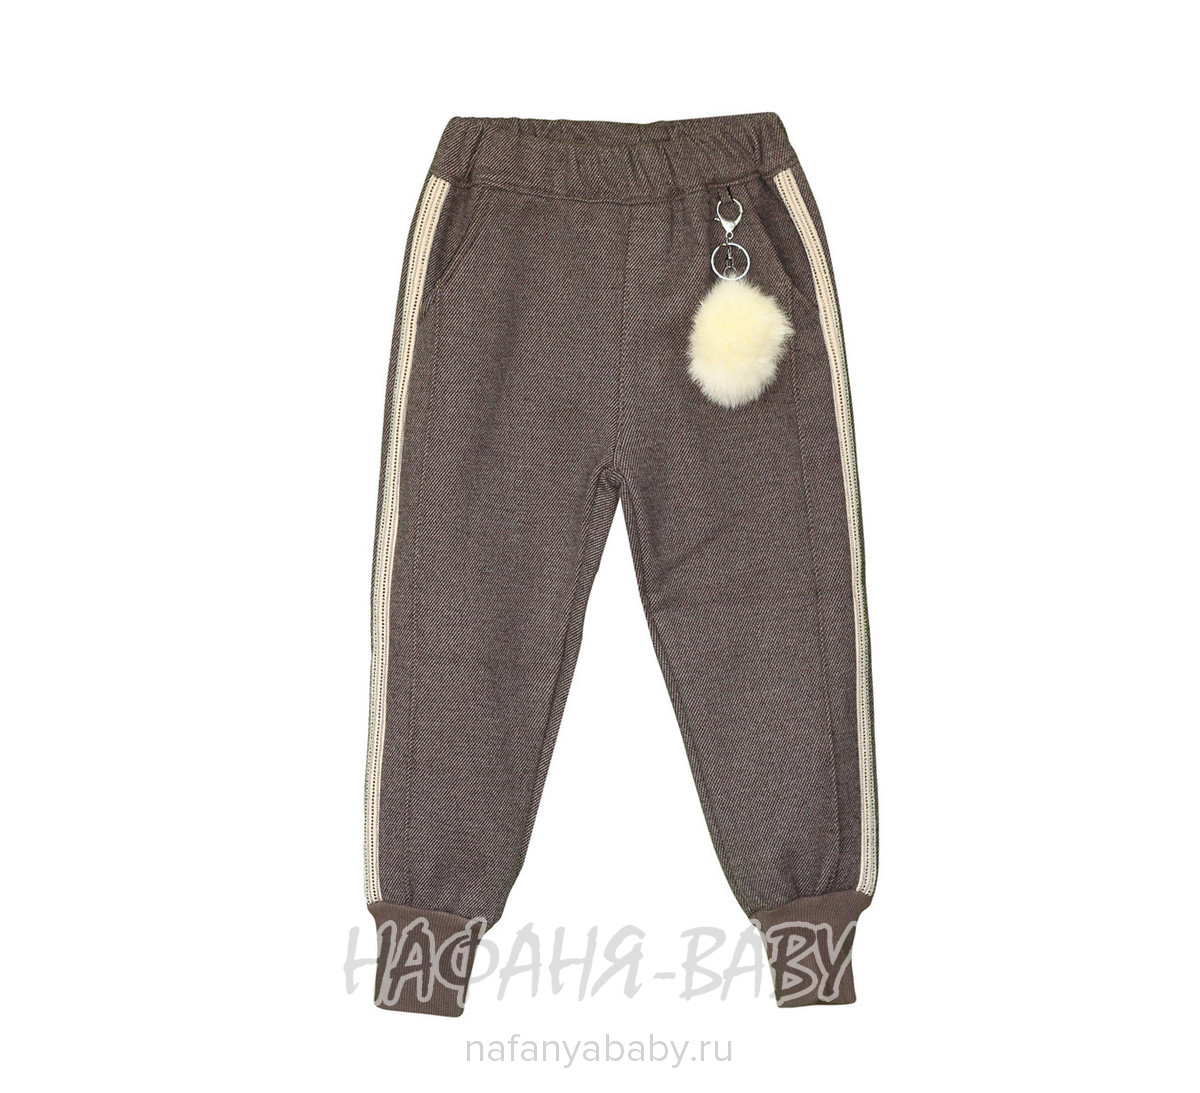 Детские брюки для девочки Boletong арт: 1930, 5-9 лет, цвет коричневый, оптом Китай (Пекин)